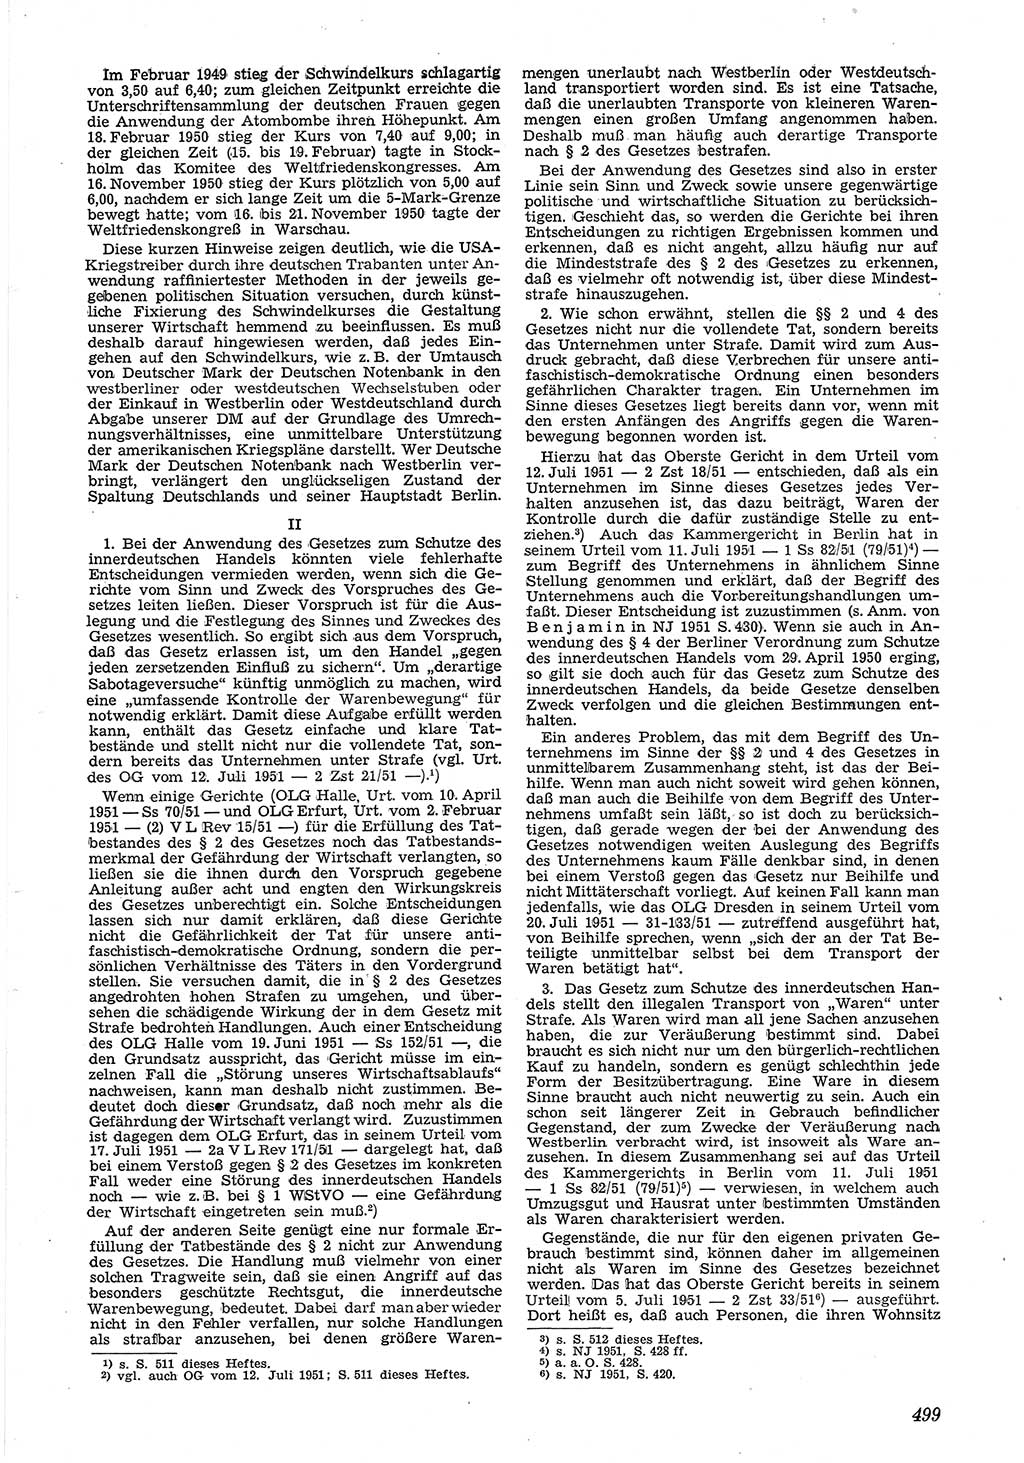 Neue Justiz (NJ), Zeitschrift für Recht und Rechtswissenschaft [Deutsche Demokratische Republik (DDR)], 5. Jahrgang 1951, Seite 499 (NJ DDR 1951, S. 499)